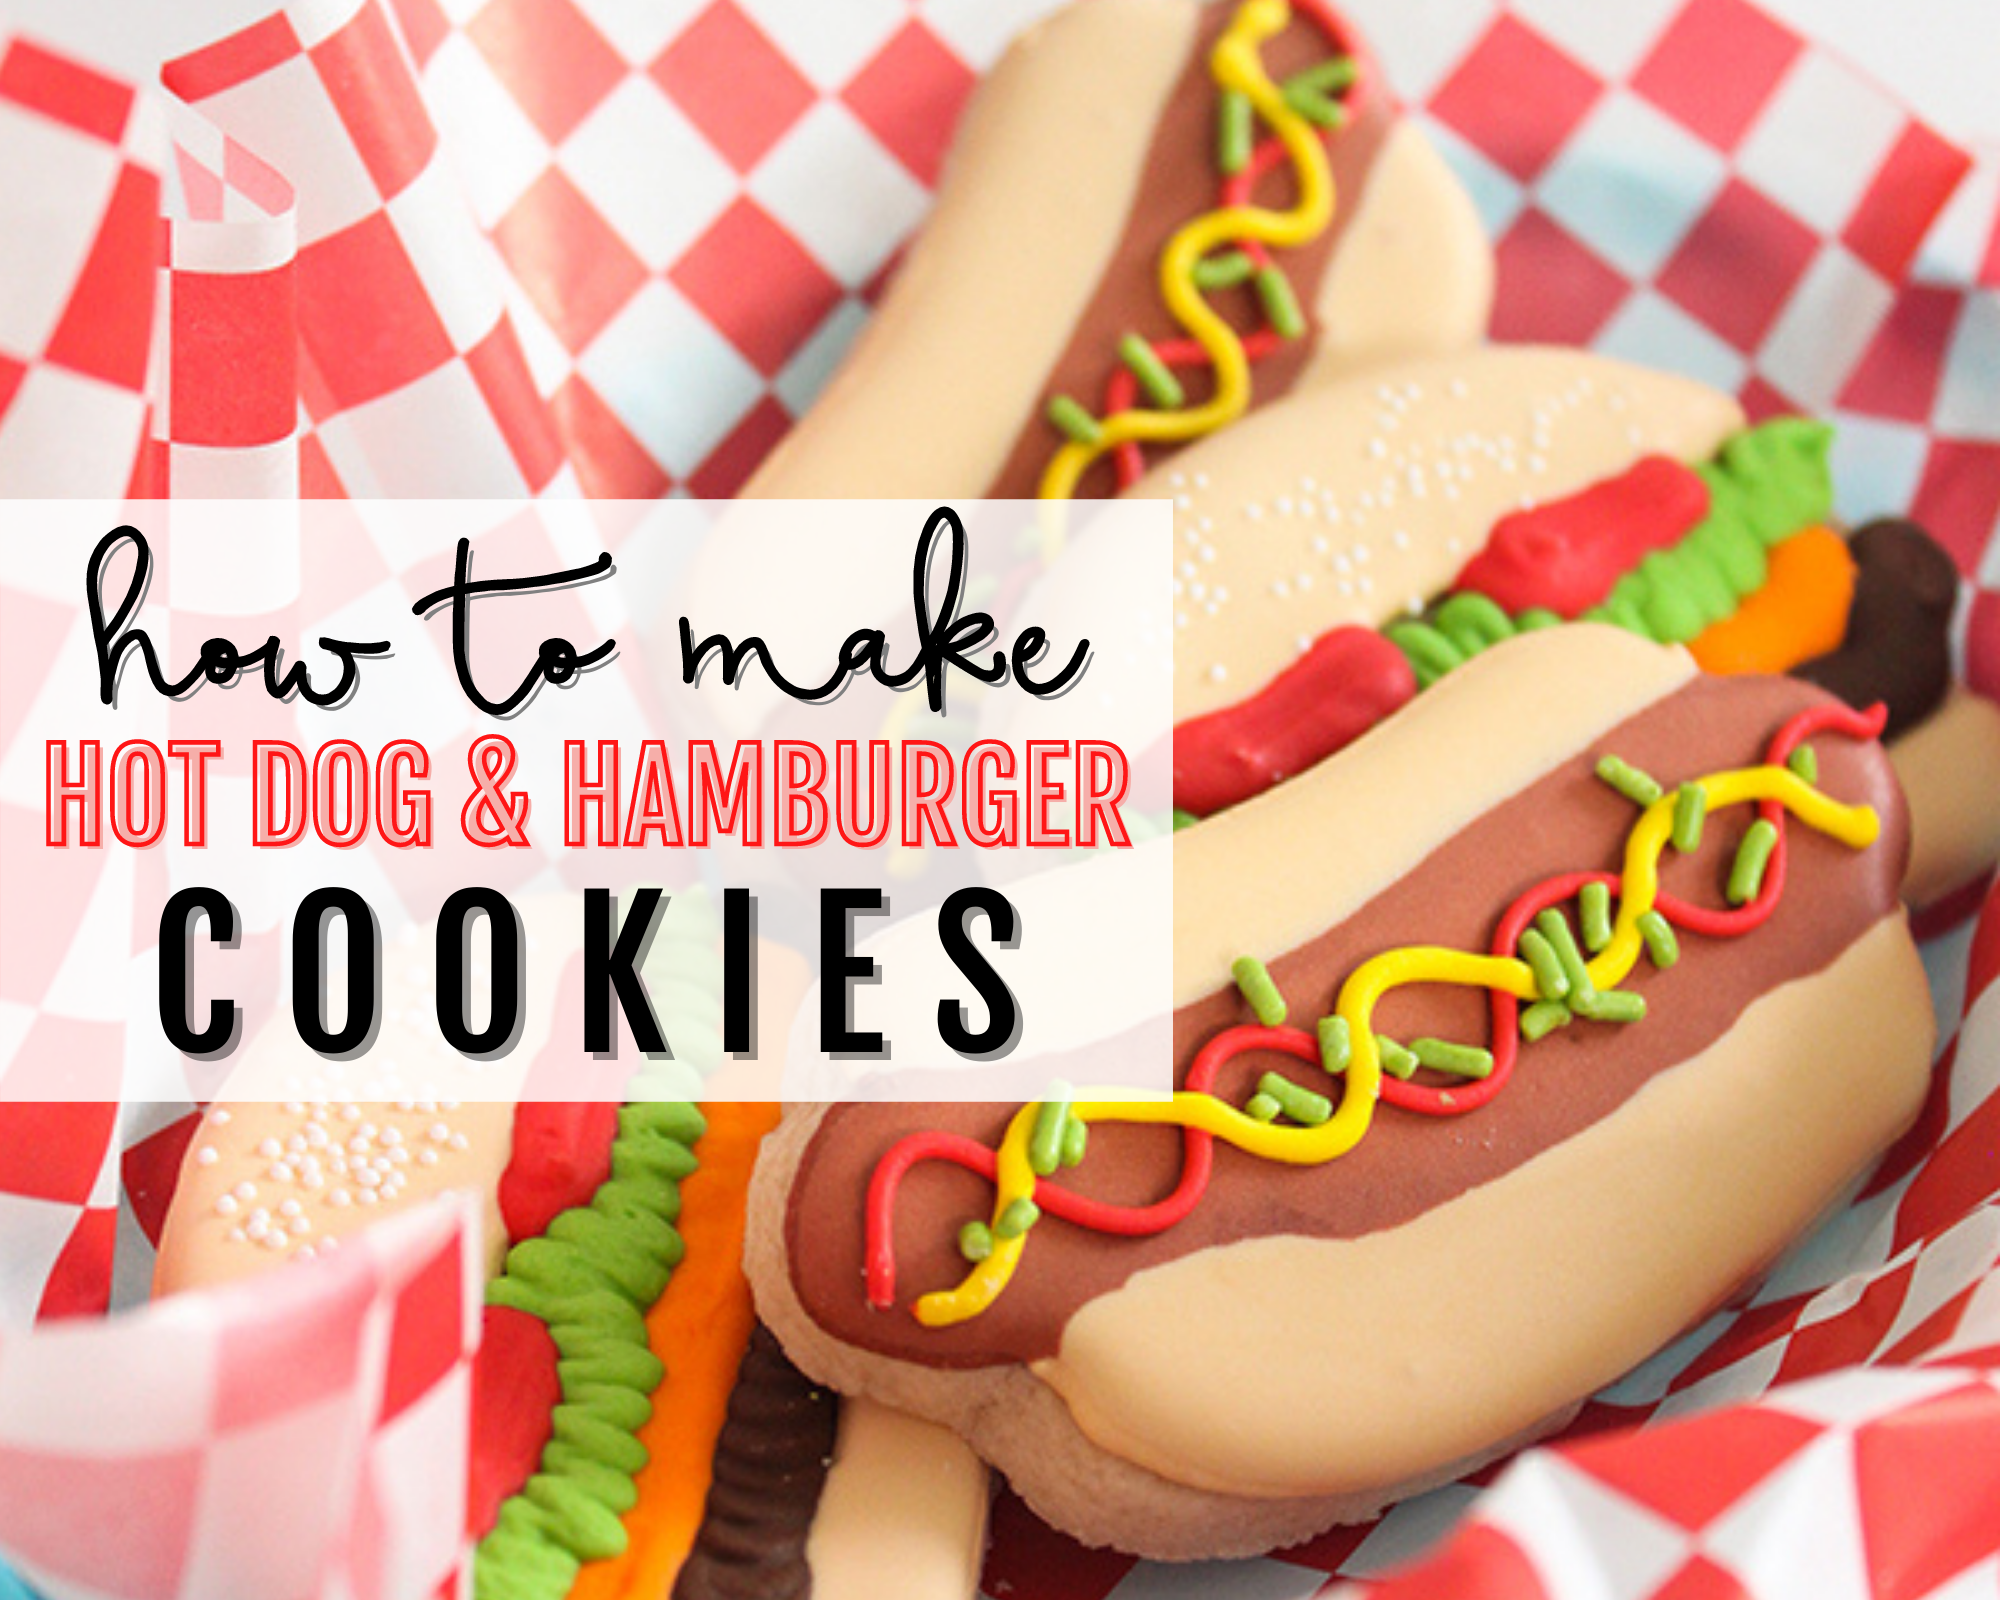 HOW TO MAKE HOT DOG & HAMBURGER COOKIES